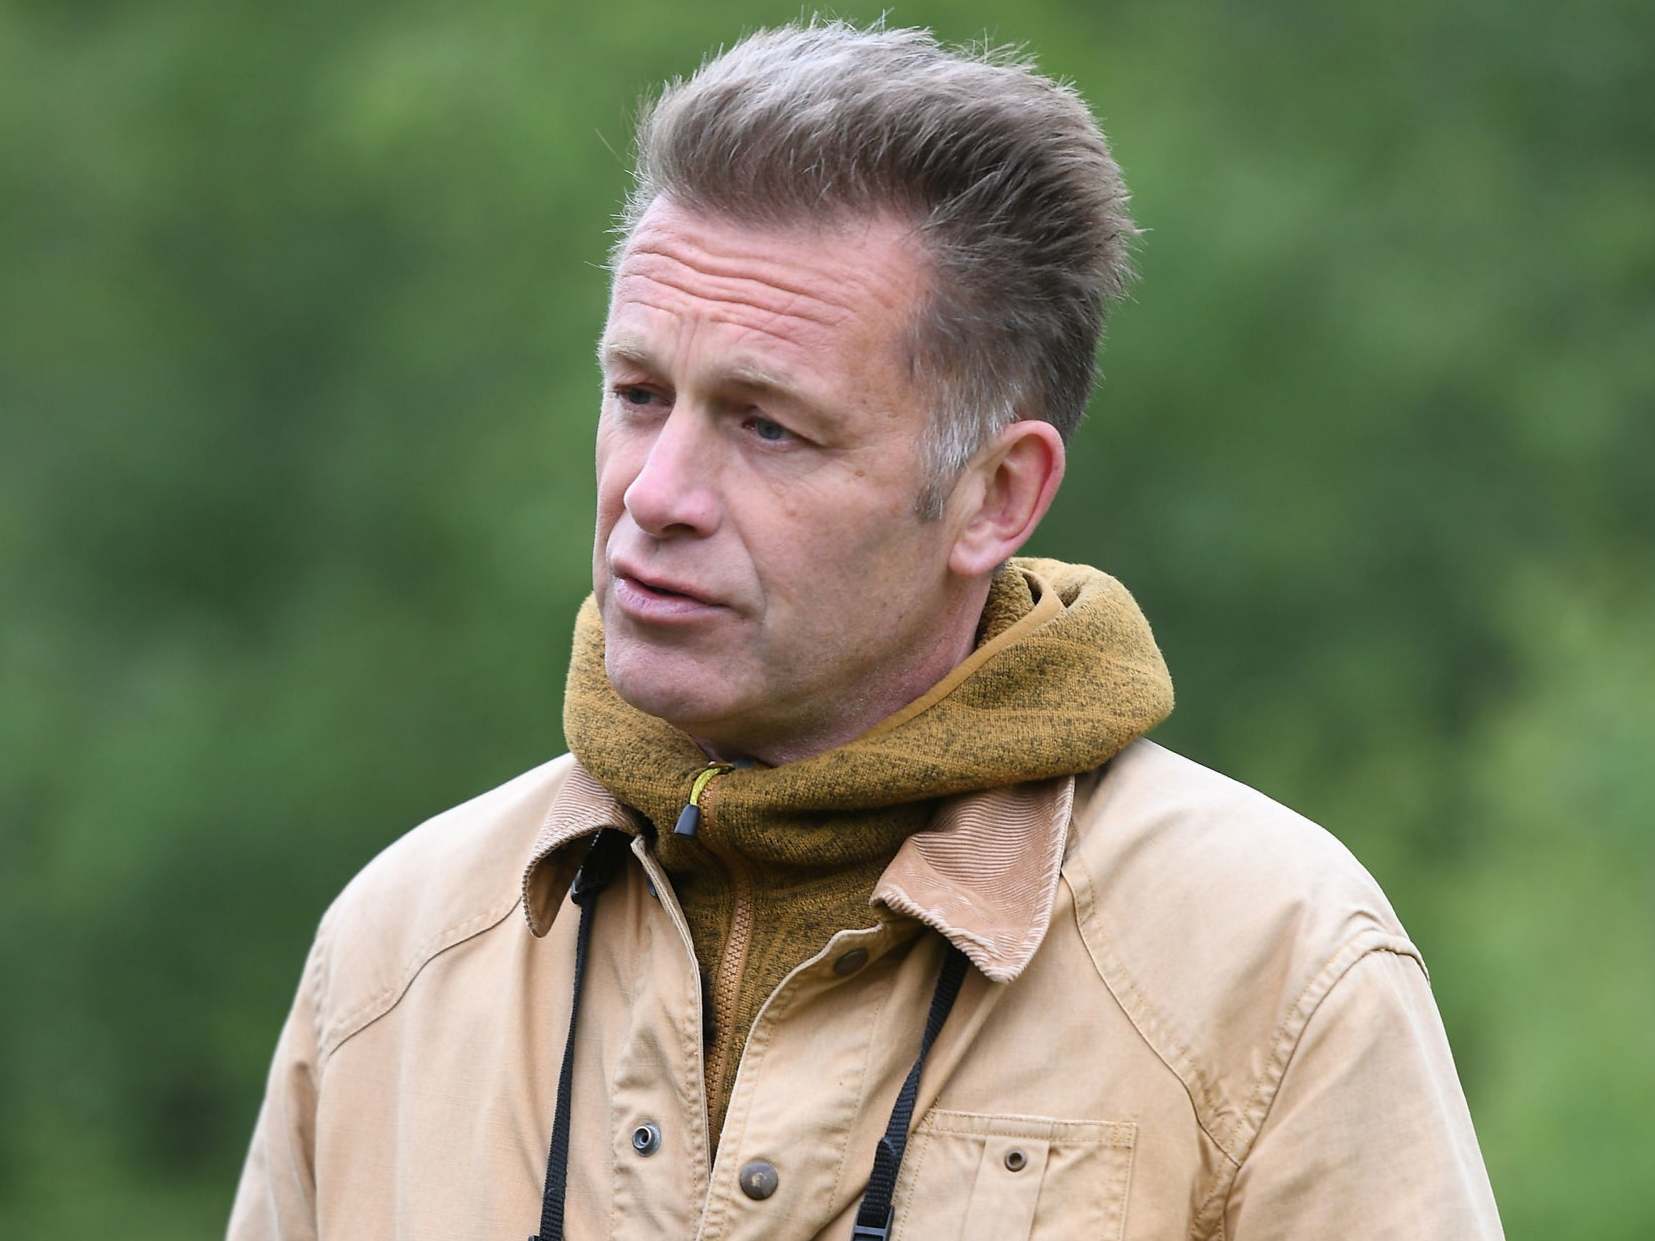 Dead fox 'left at home' of TV presenter Chris Packham